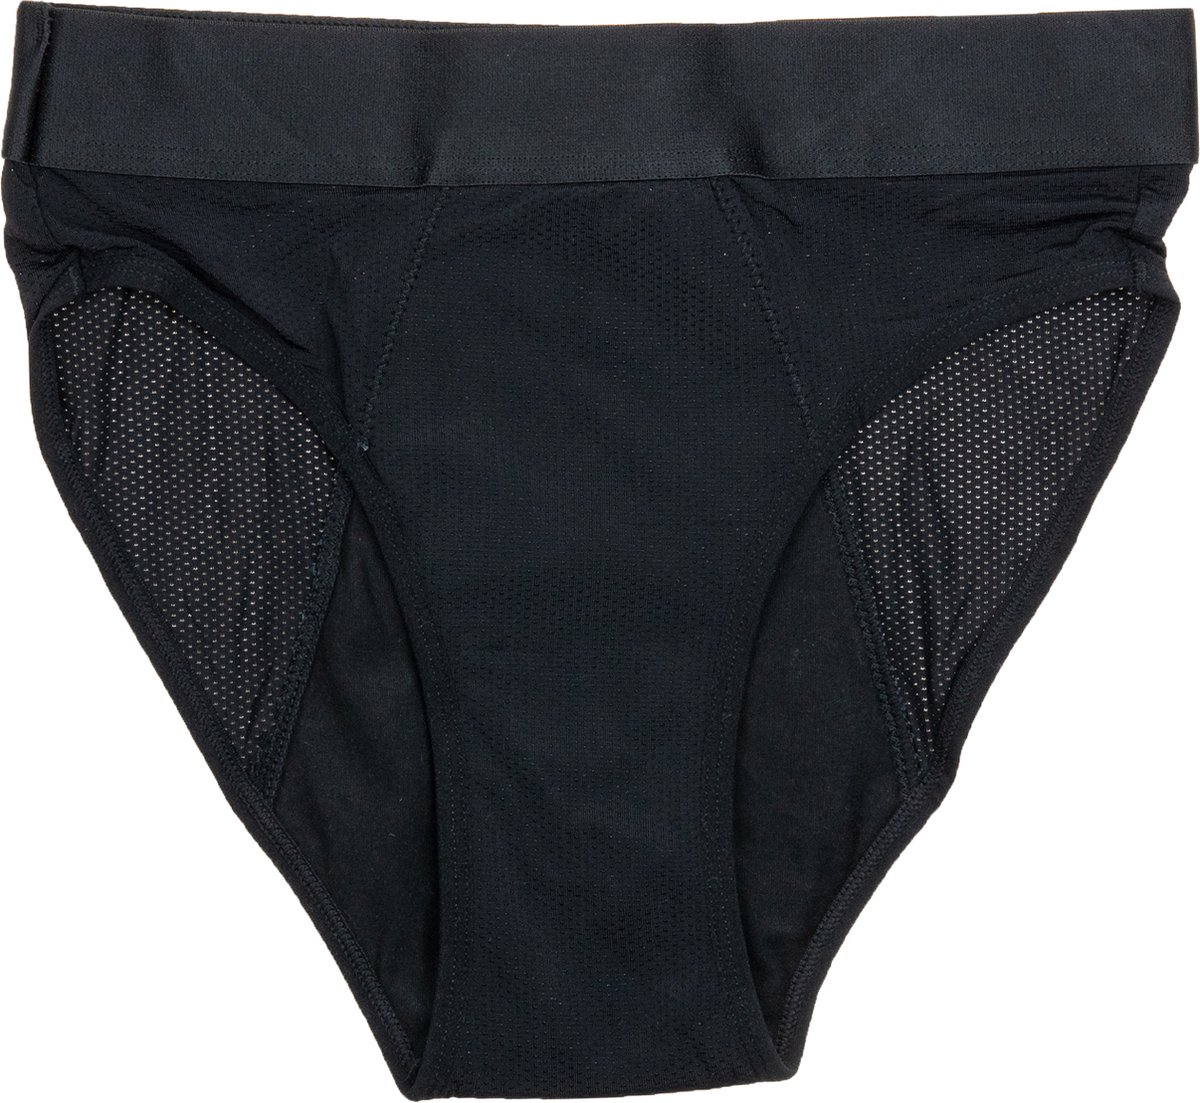 Cheeky Pants Feeling Hip High Rise Menstruatieondergoed Maat 40-42 Zero Waste - Comfort - Zekerheid - Sportief